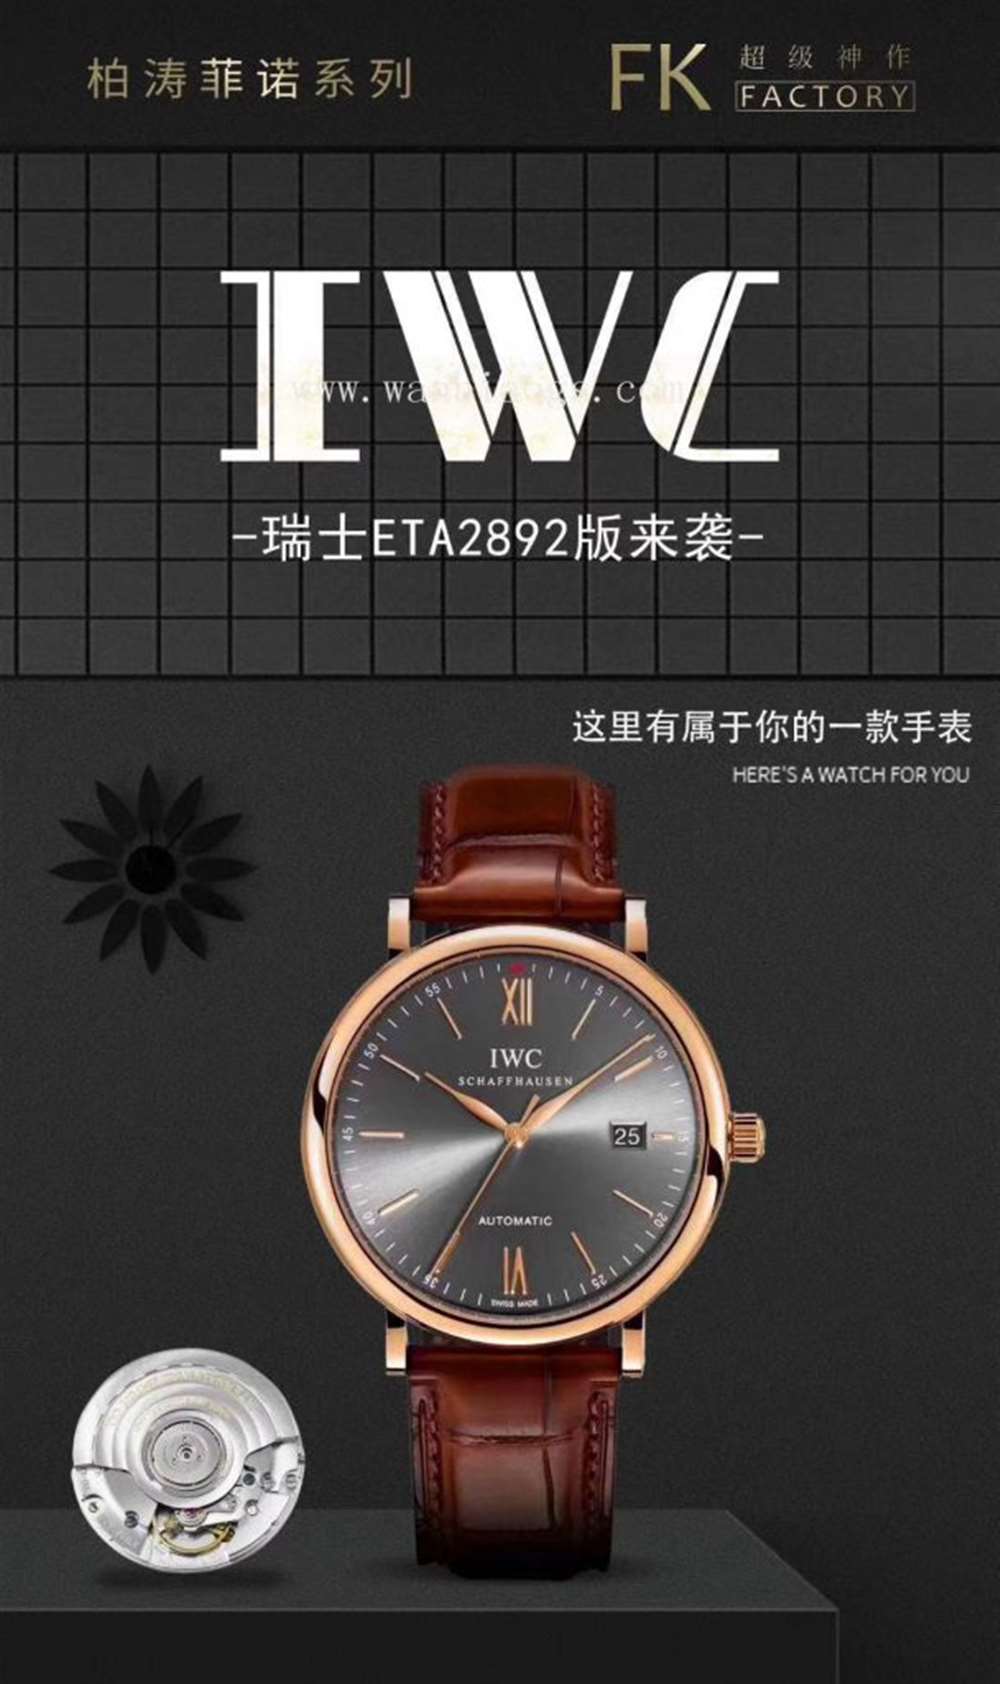 FK厂万国柏涛菲诺系列IW35630腕表—对比正品评测  第16张